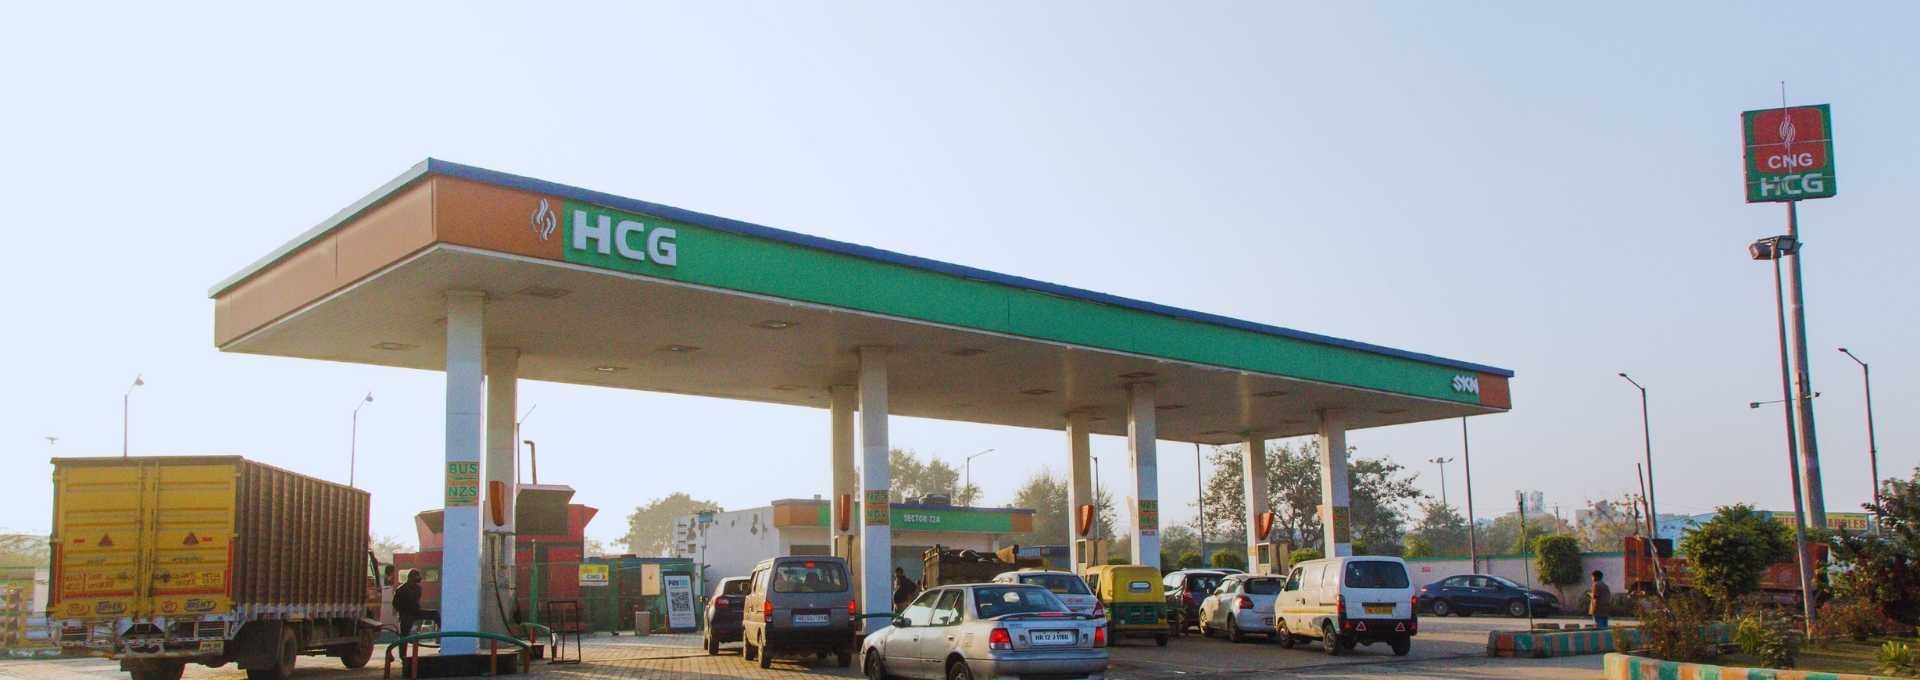 हरियाणा सिटी गैस  के सात नए स्टेशन जल्द शुरू होंगे: